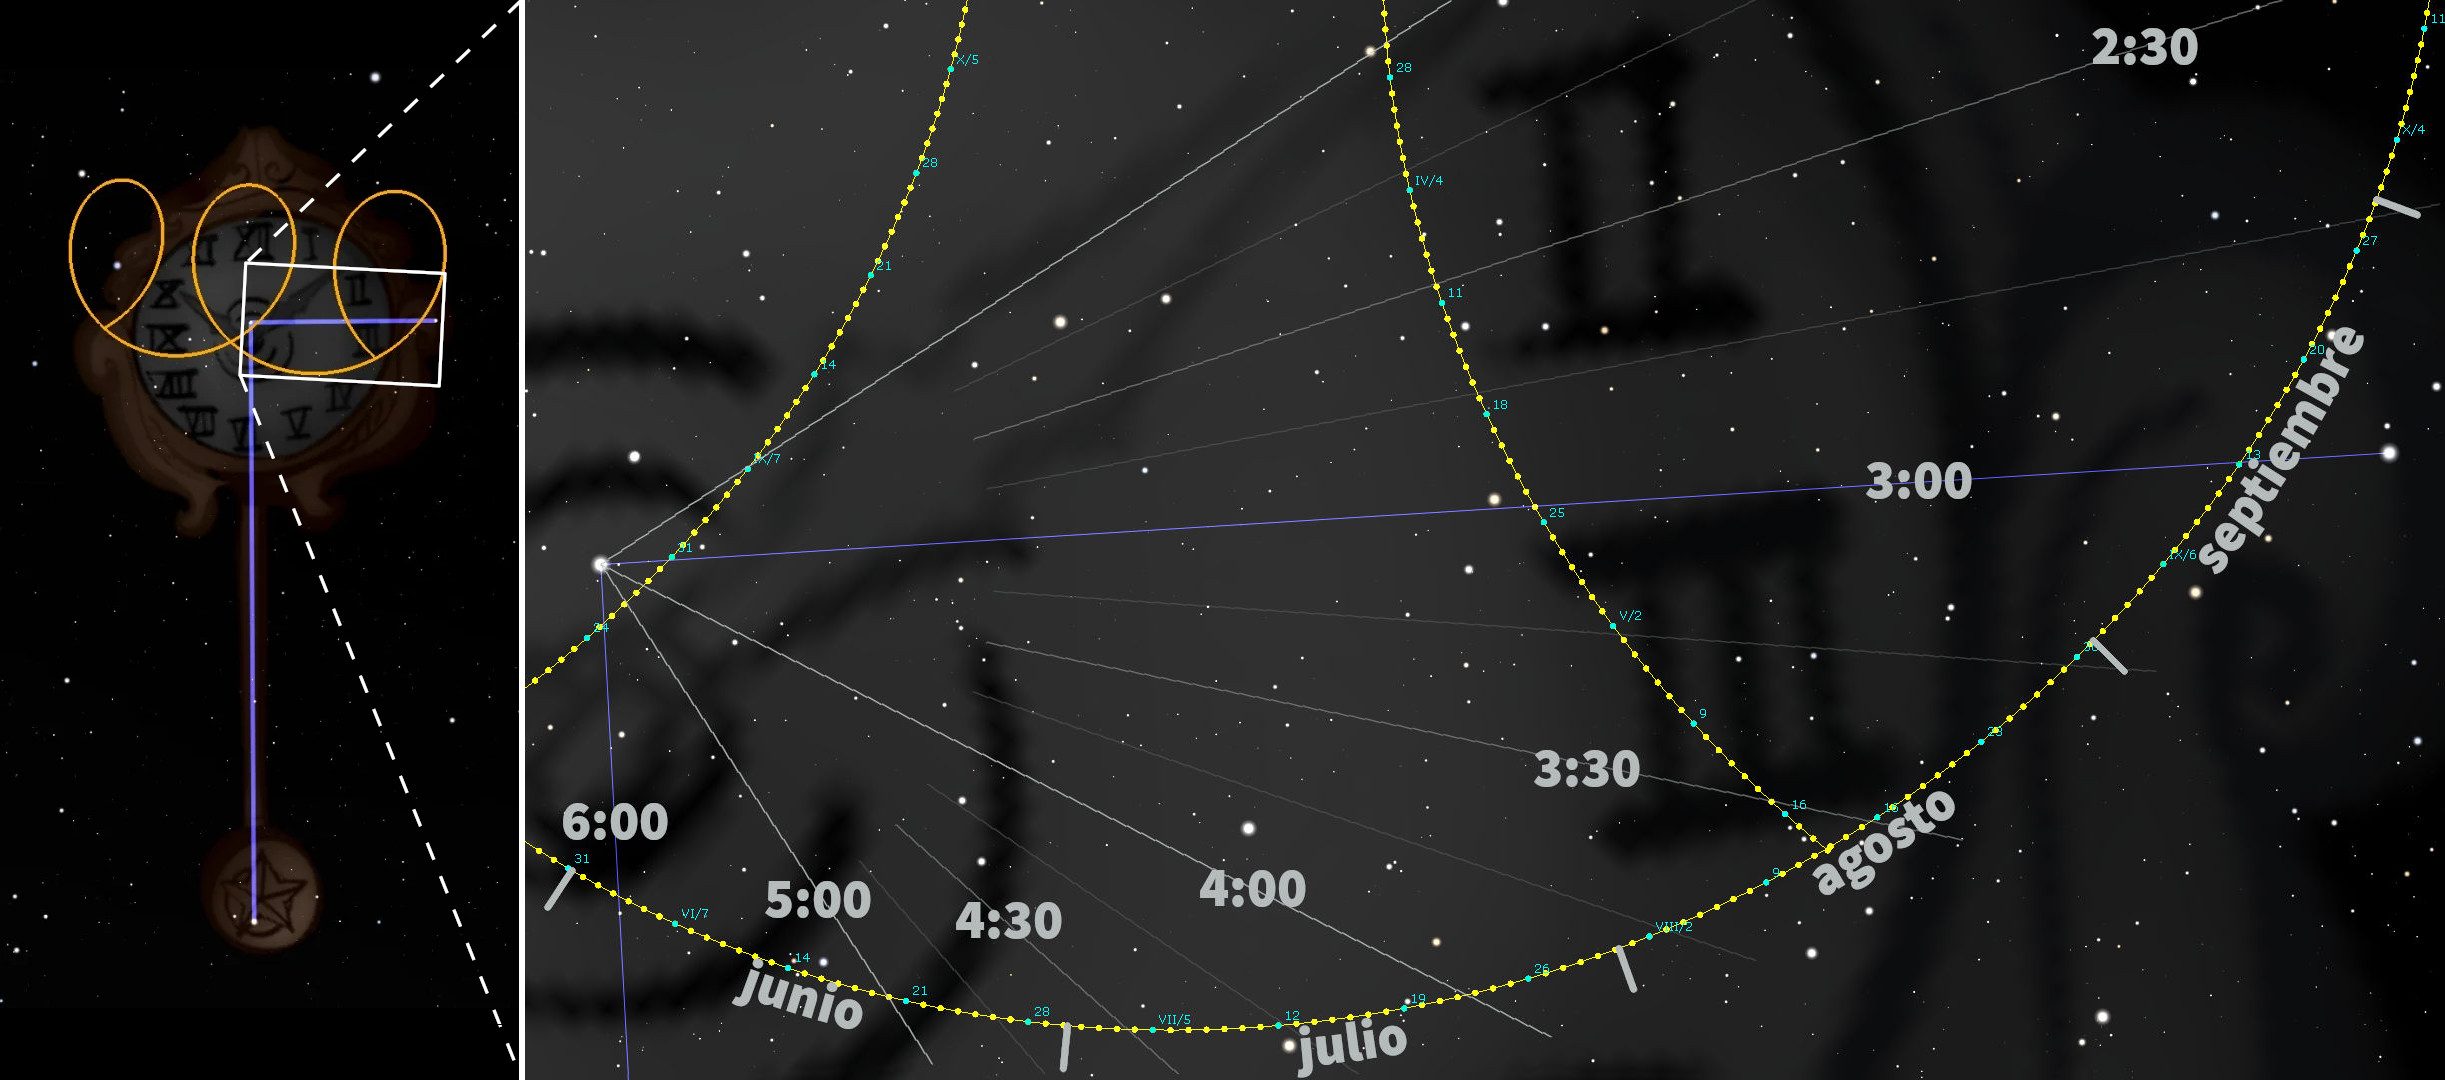 La hora exacta en el reloj Horologium-comet